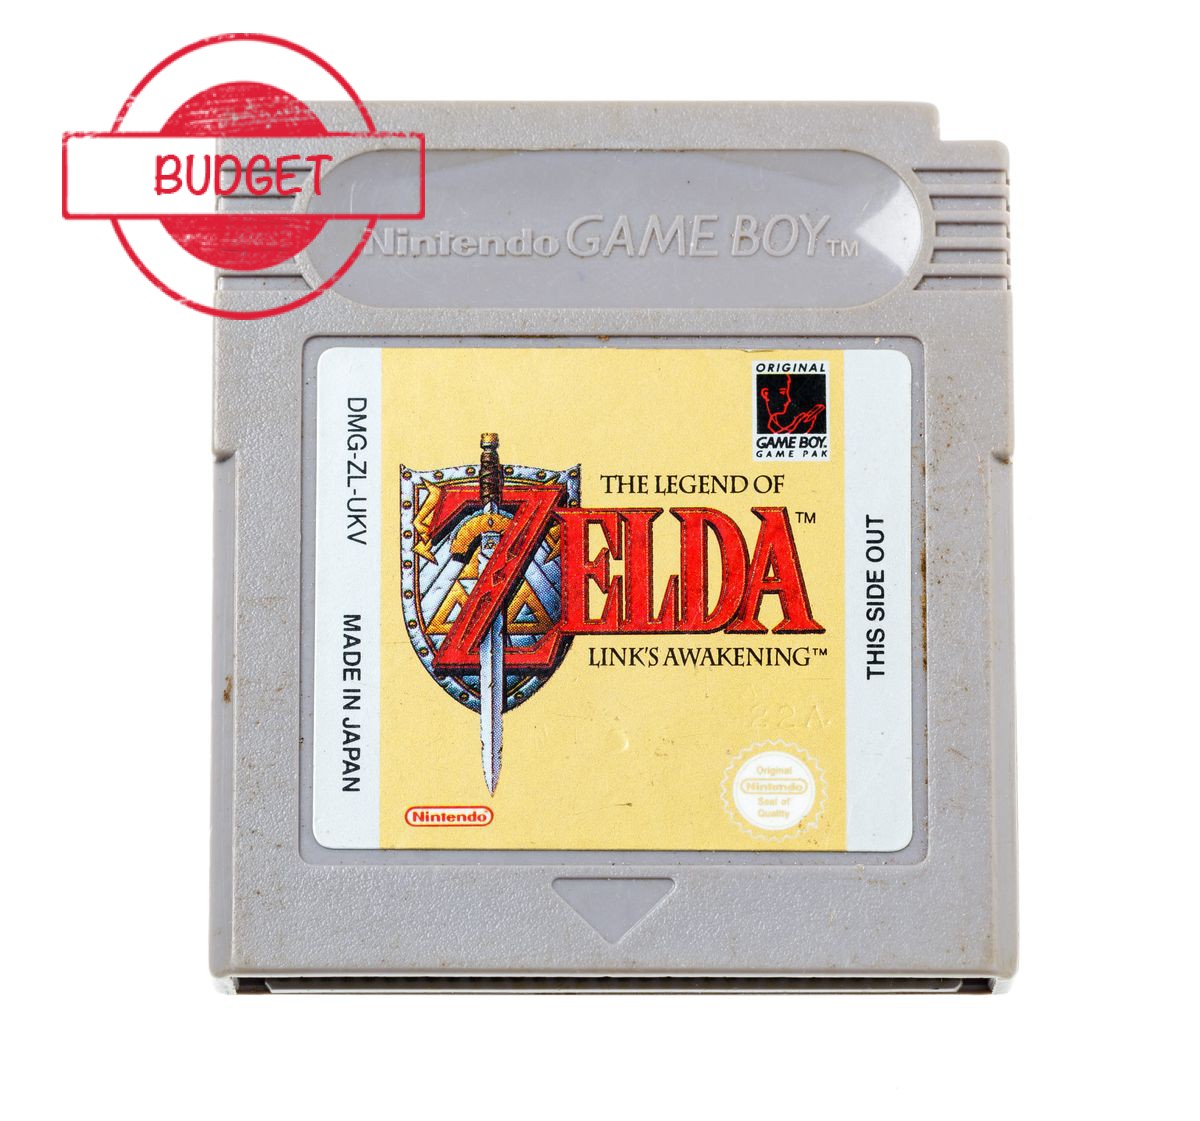 The Legend of Zelda Link's Awakening - Budget Kopen | Gameboy Classic Games